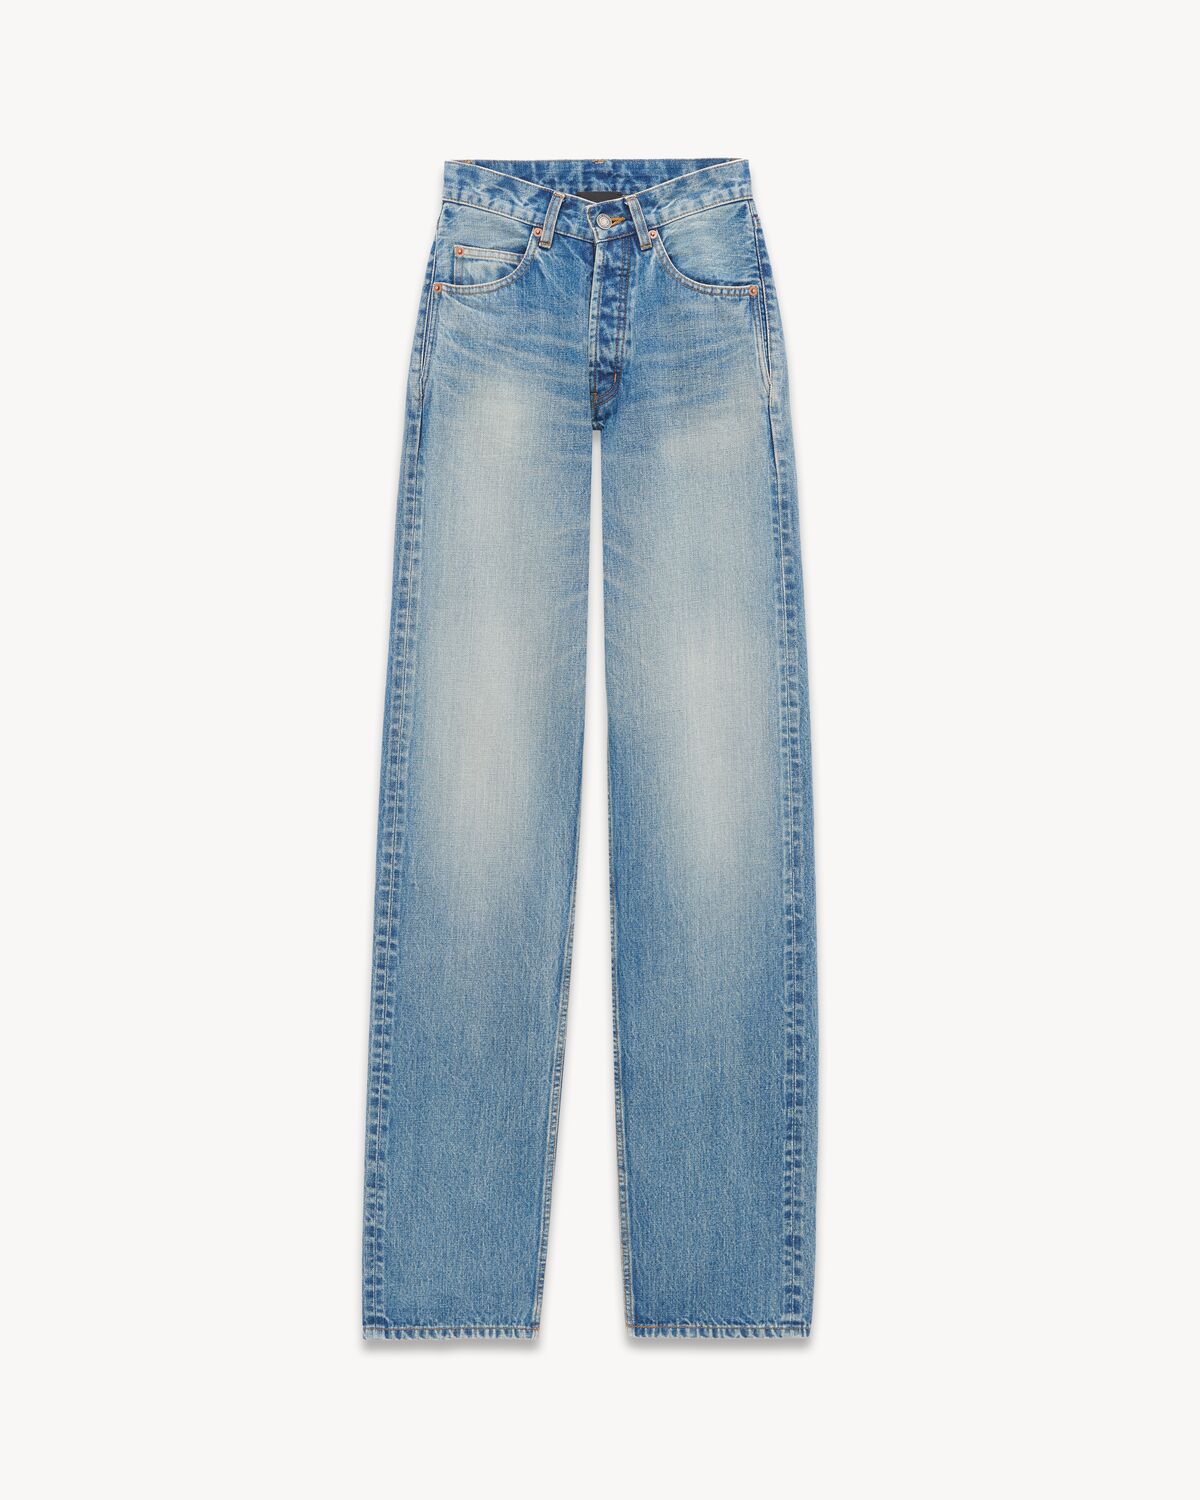 V-waist long baggy jeans in vintage blue denim